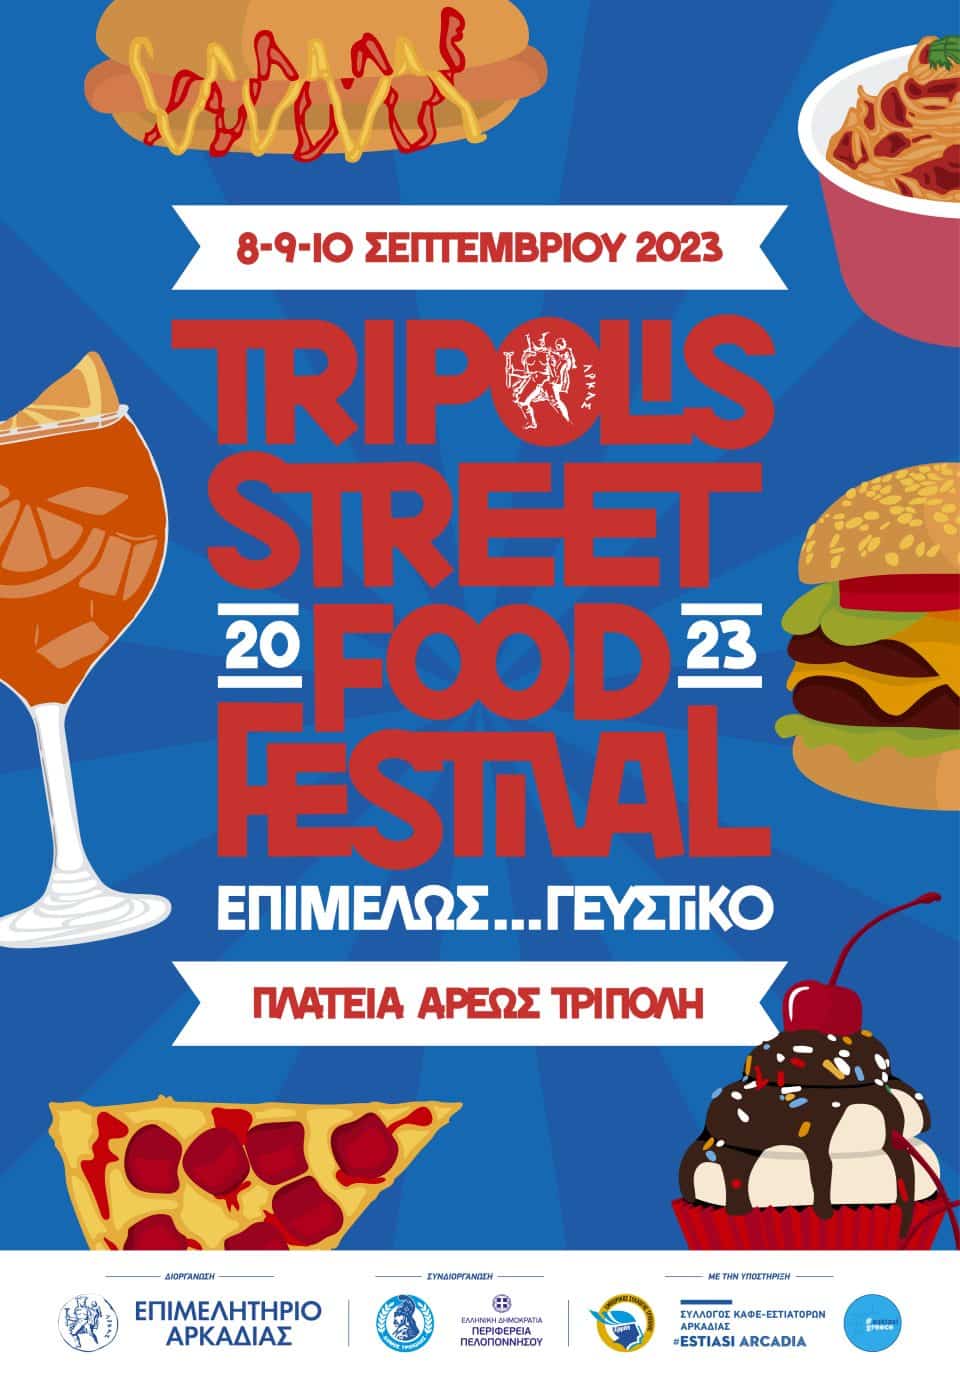 Τripolis Street Food Festival